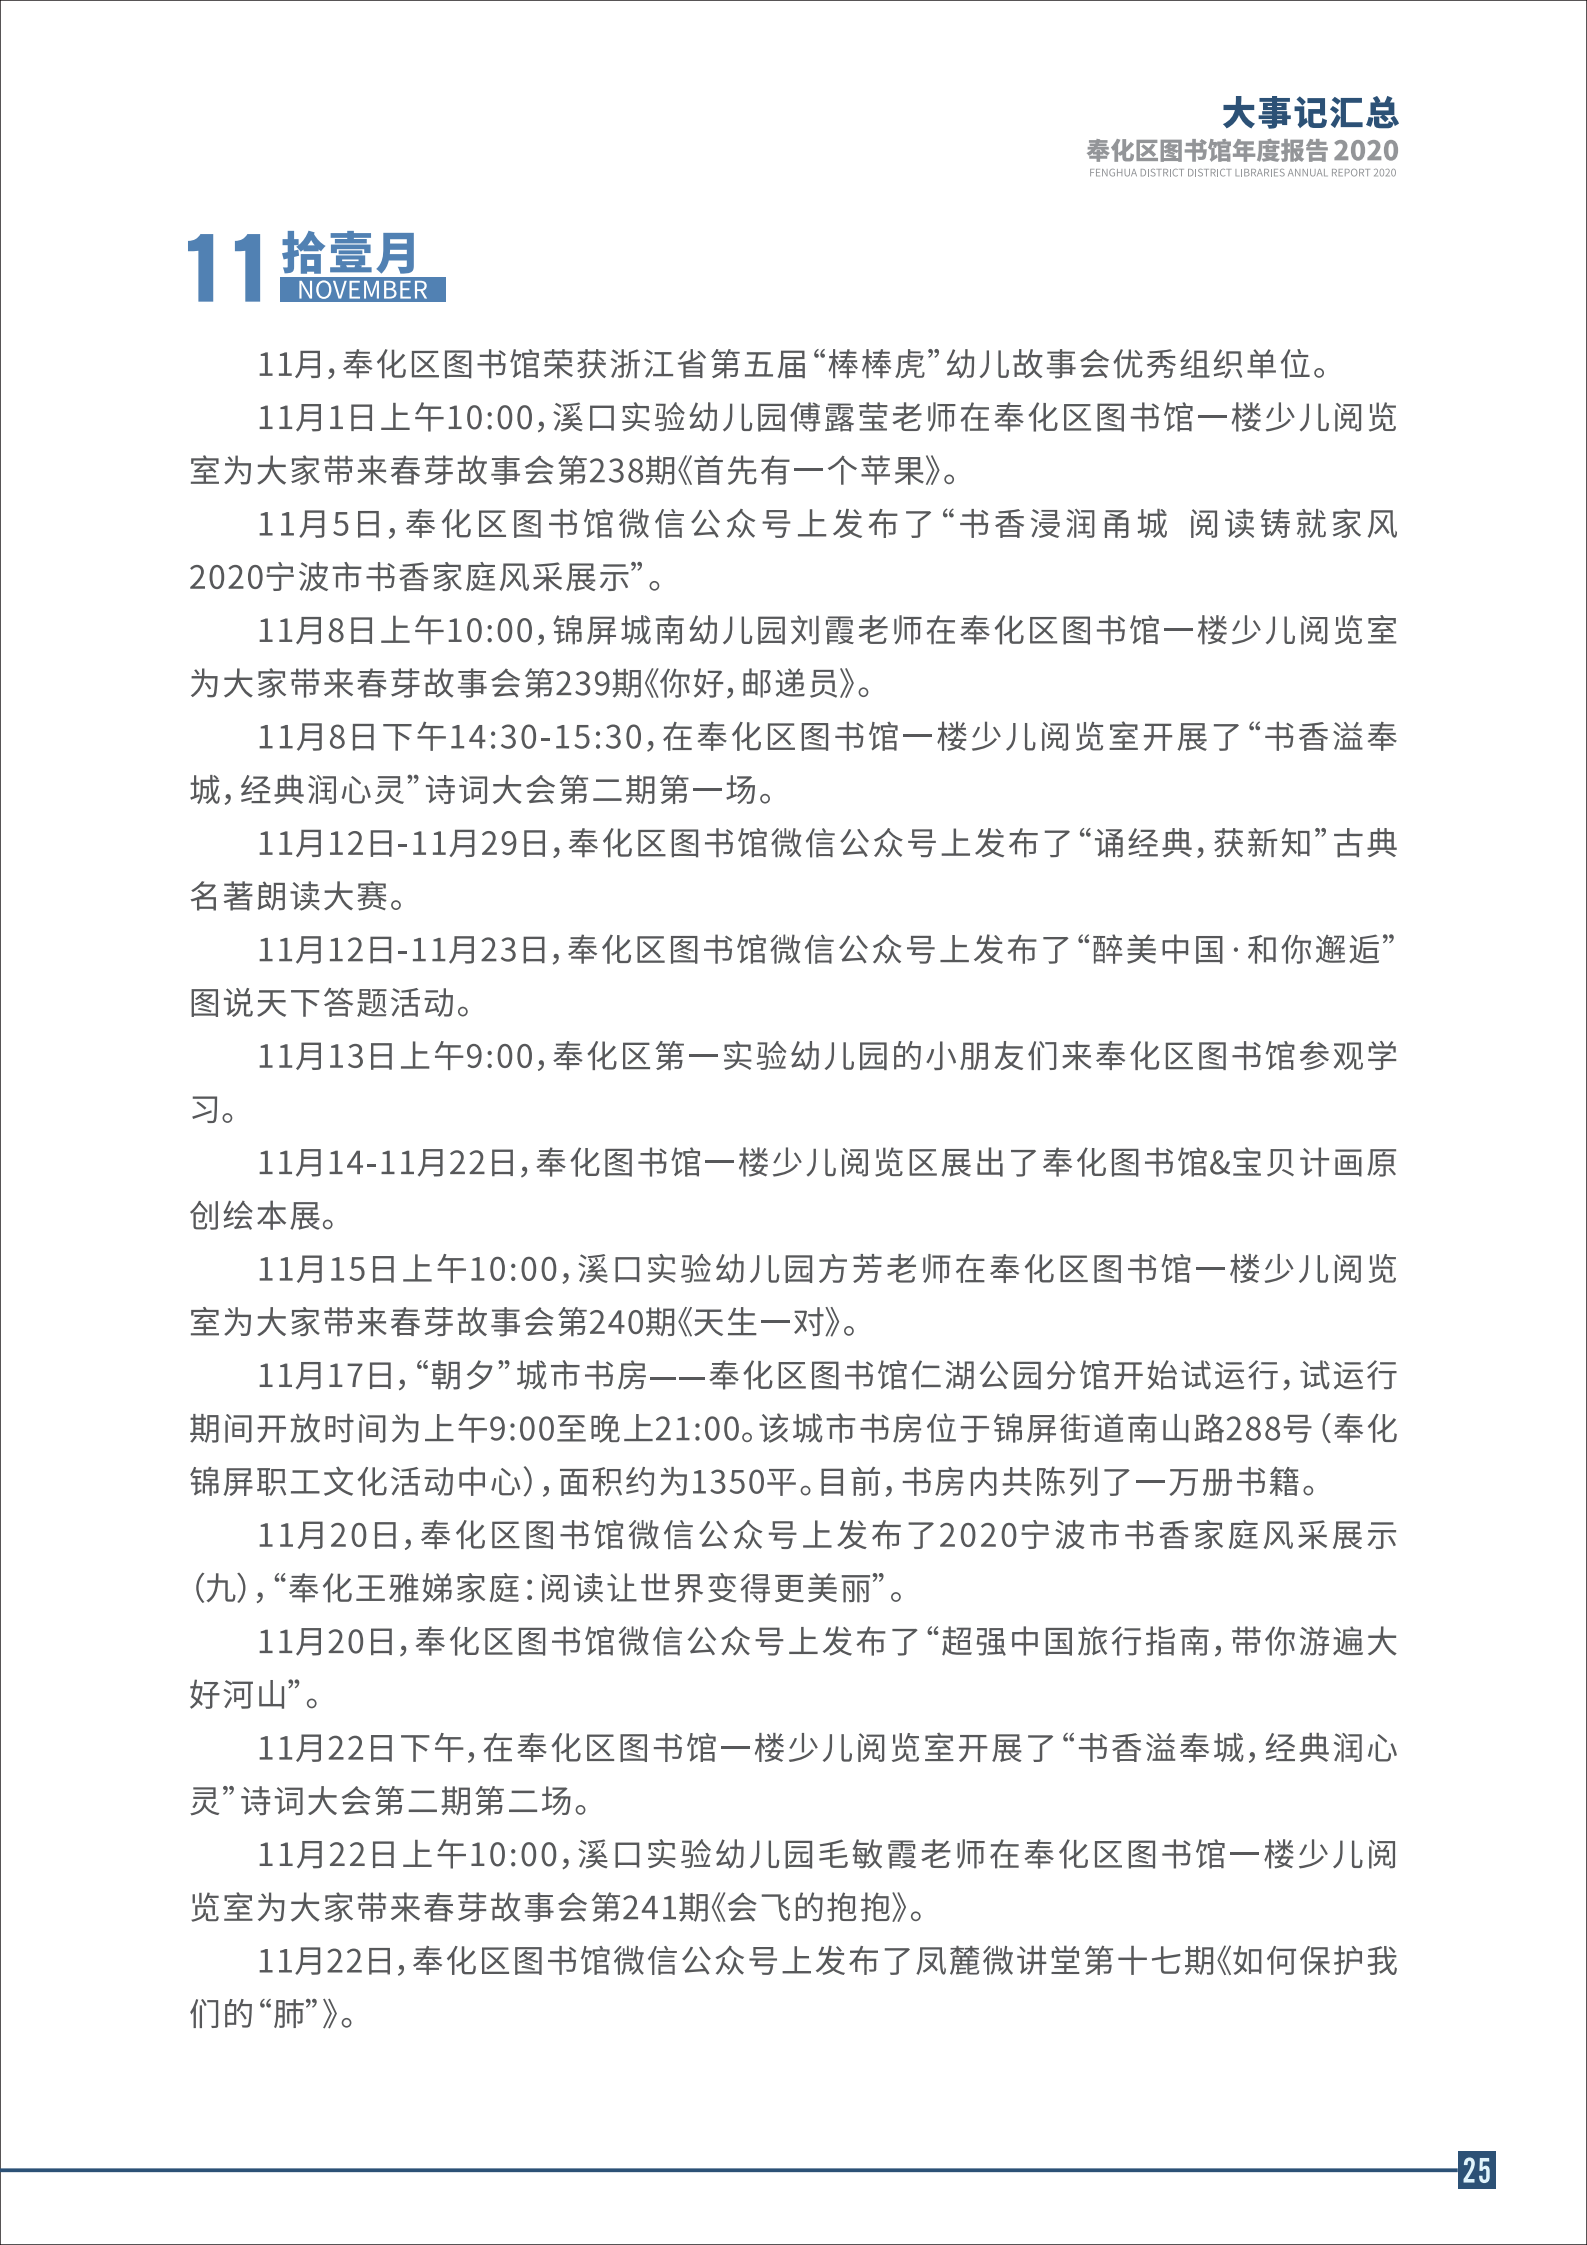 宁波市奉化区图书馆2020年年度报告 终稿_25.png